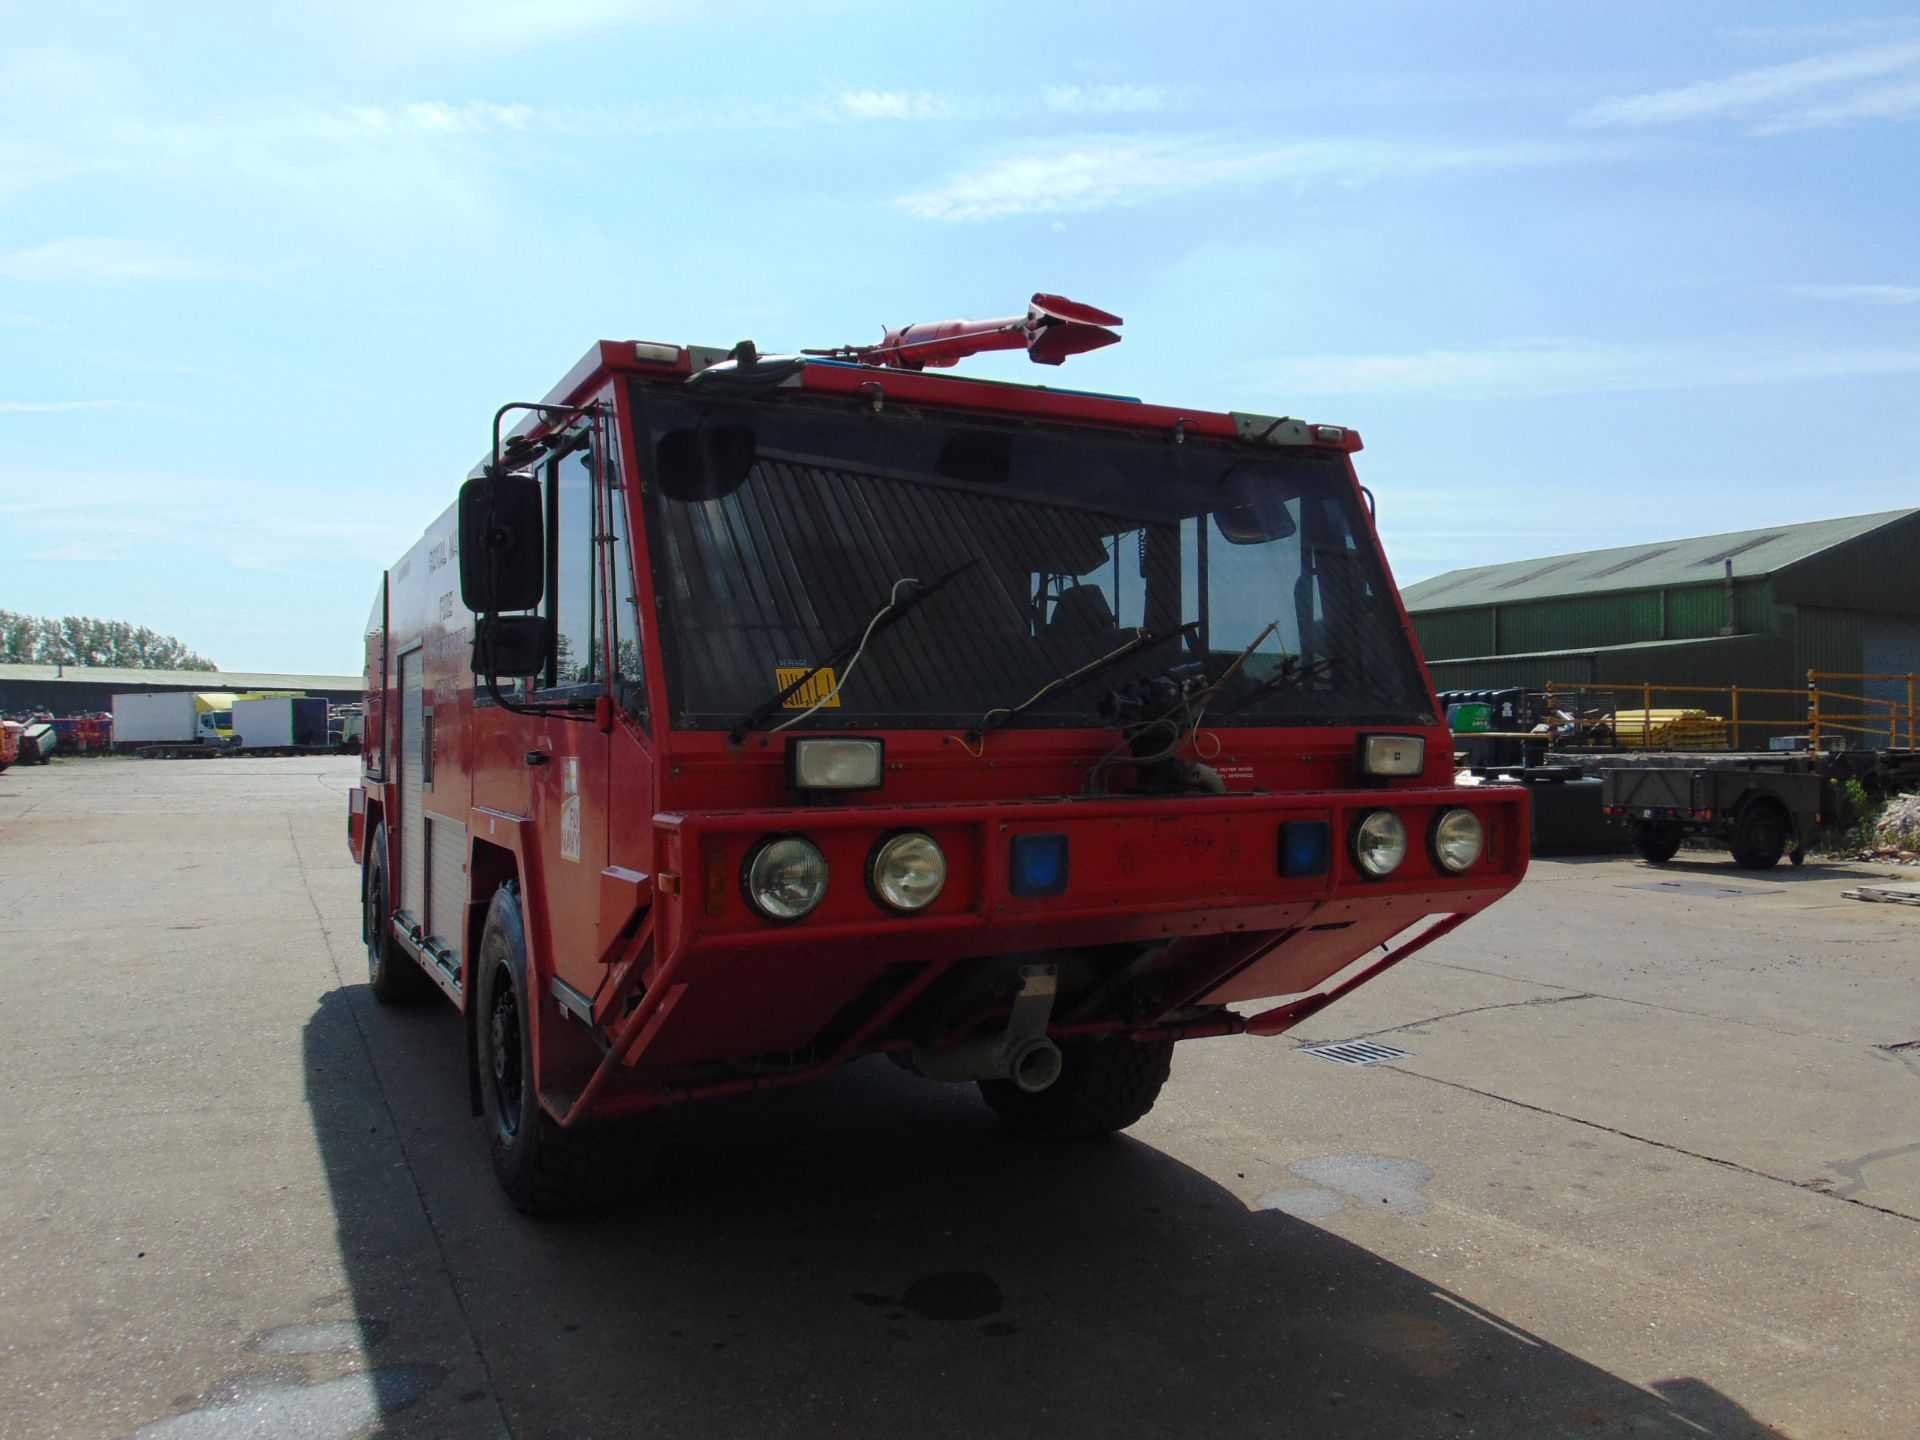 Unipower 4 x 4 Airport Fire Fighting Appliance - Rapid Intervention Vehicle - Bild 6 aus 73